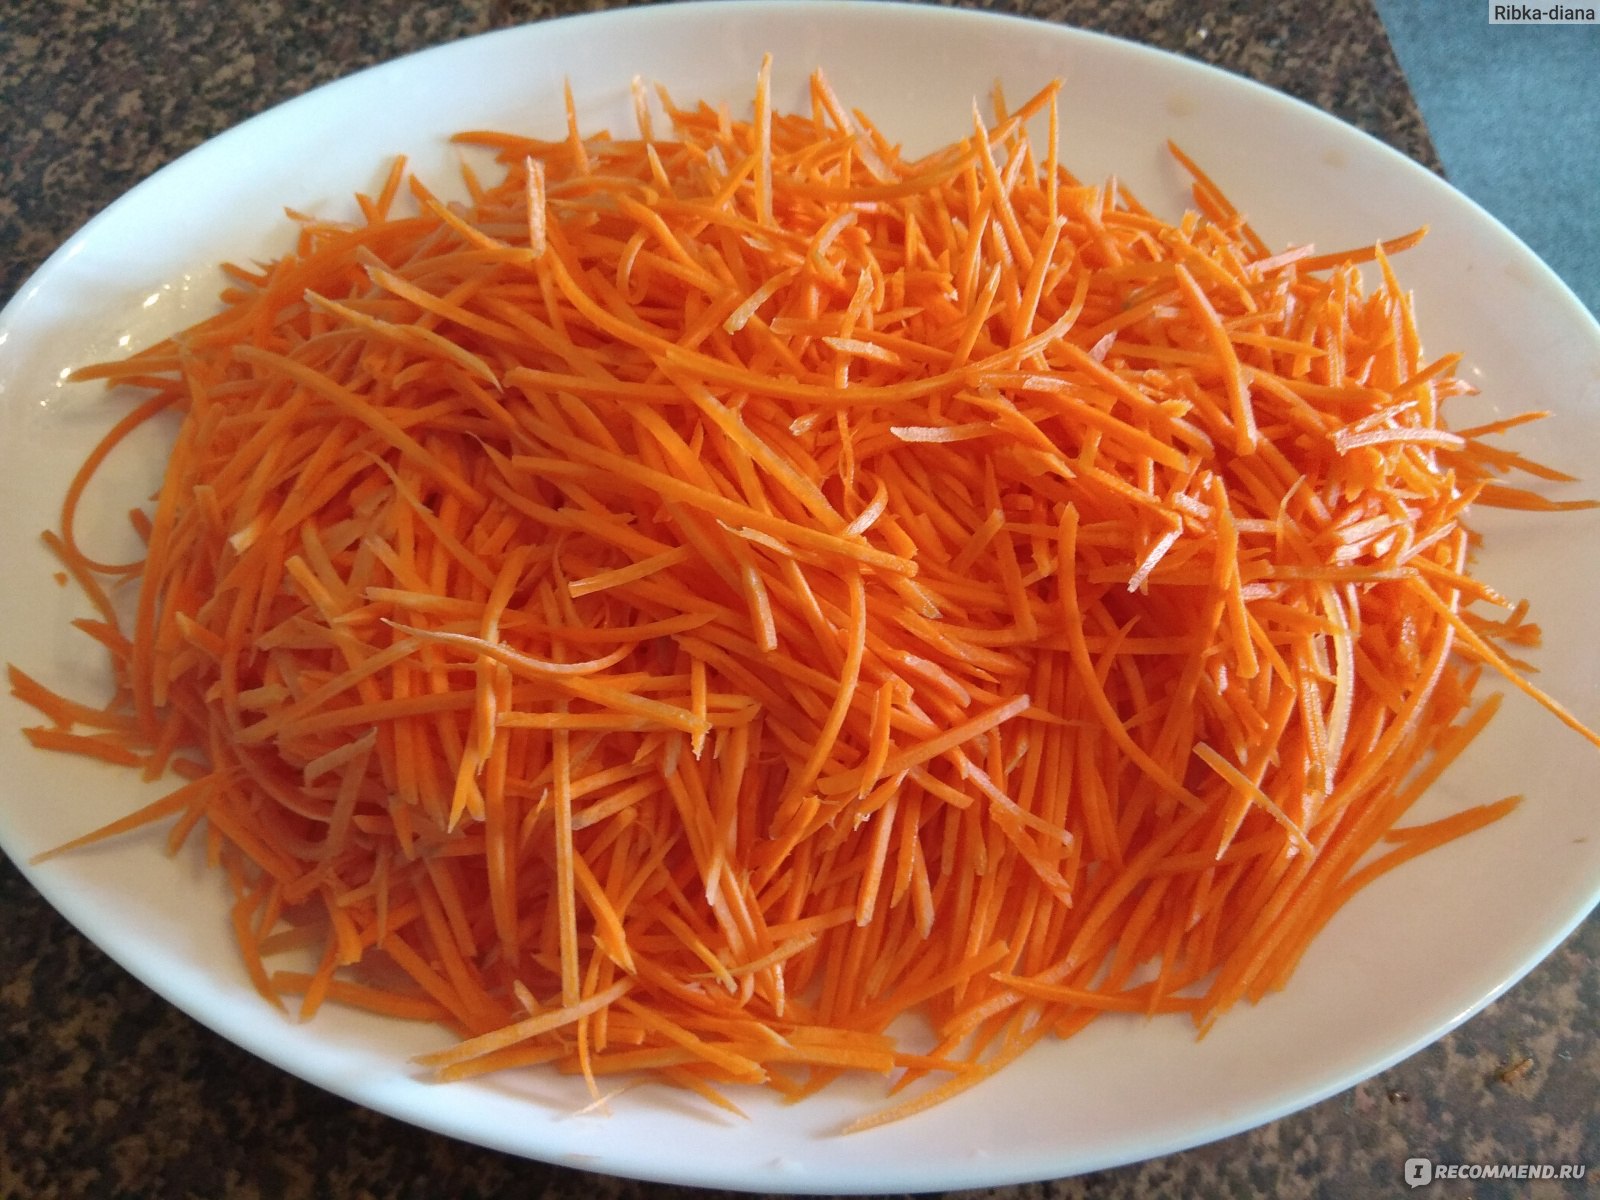 Терка Роко для корейской моркови (модель Тренд) Borner